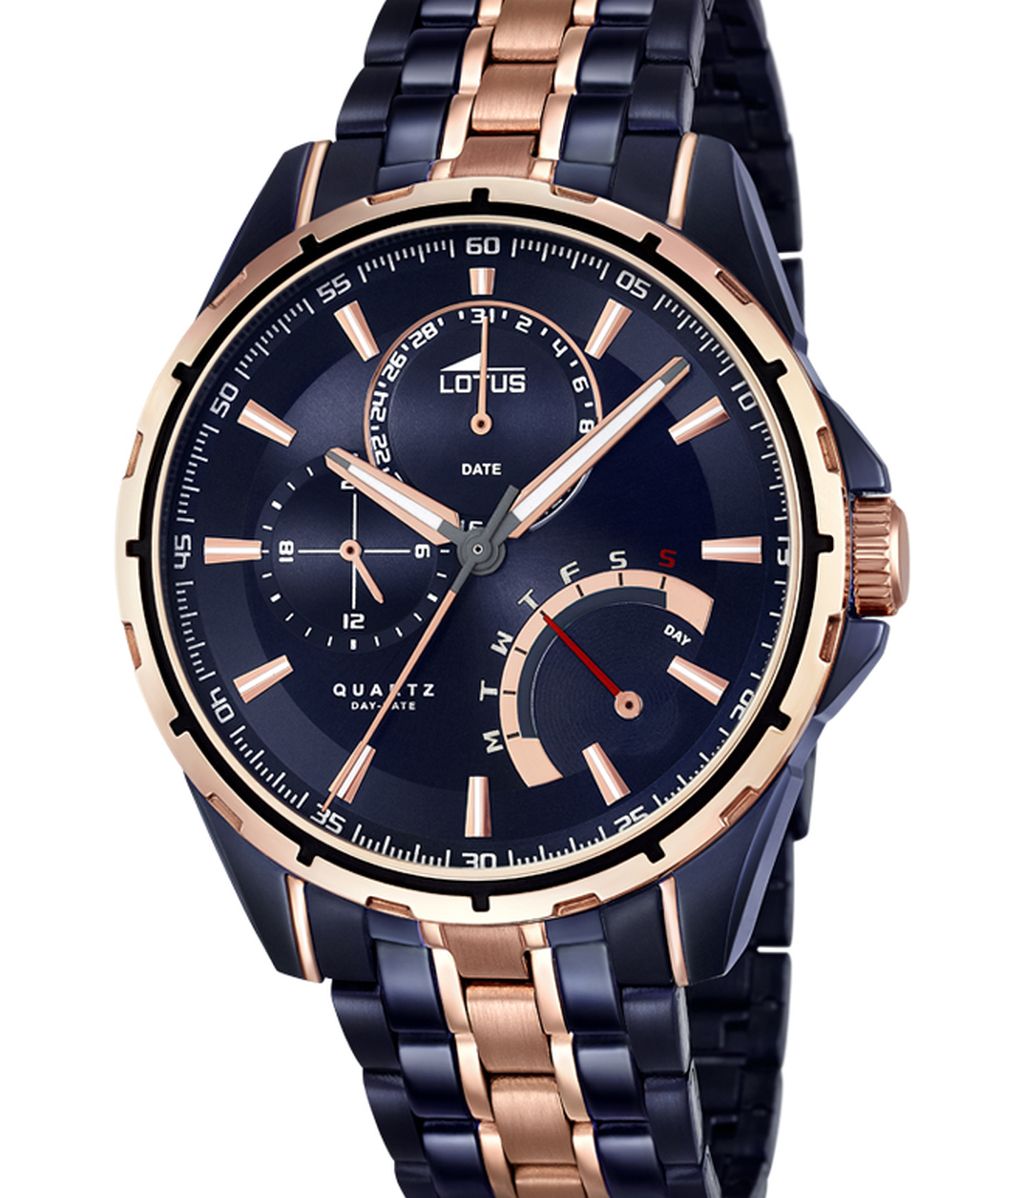 #WatchAddiction en ‘GH16’: consigue tu reloj LOTUS